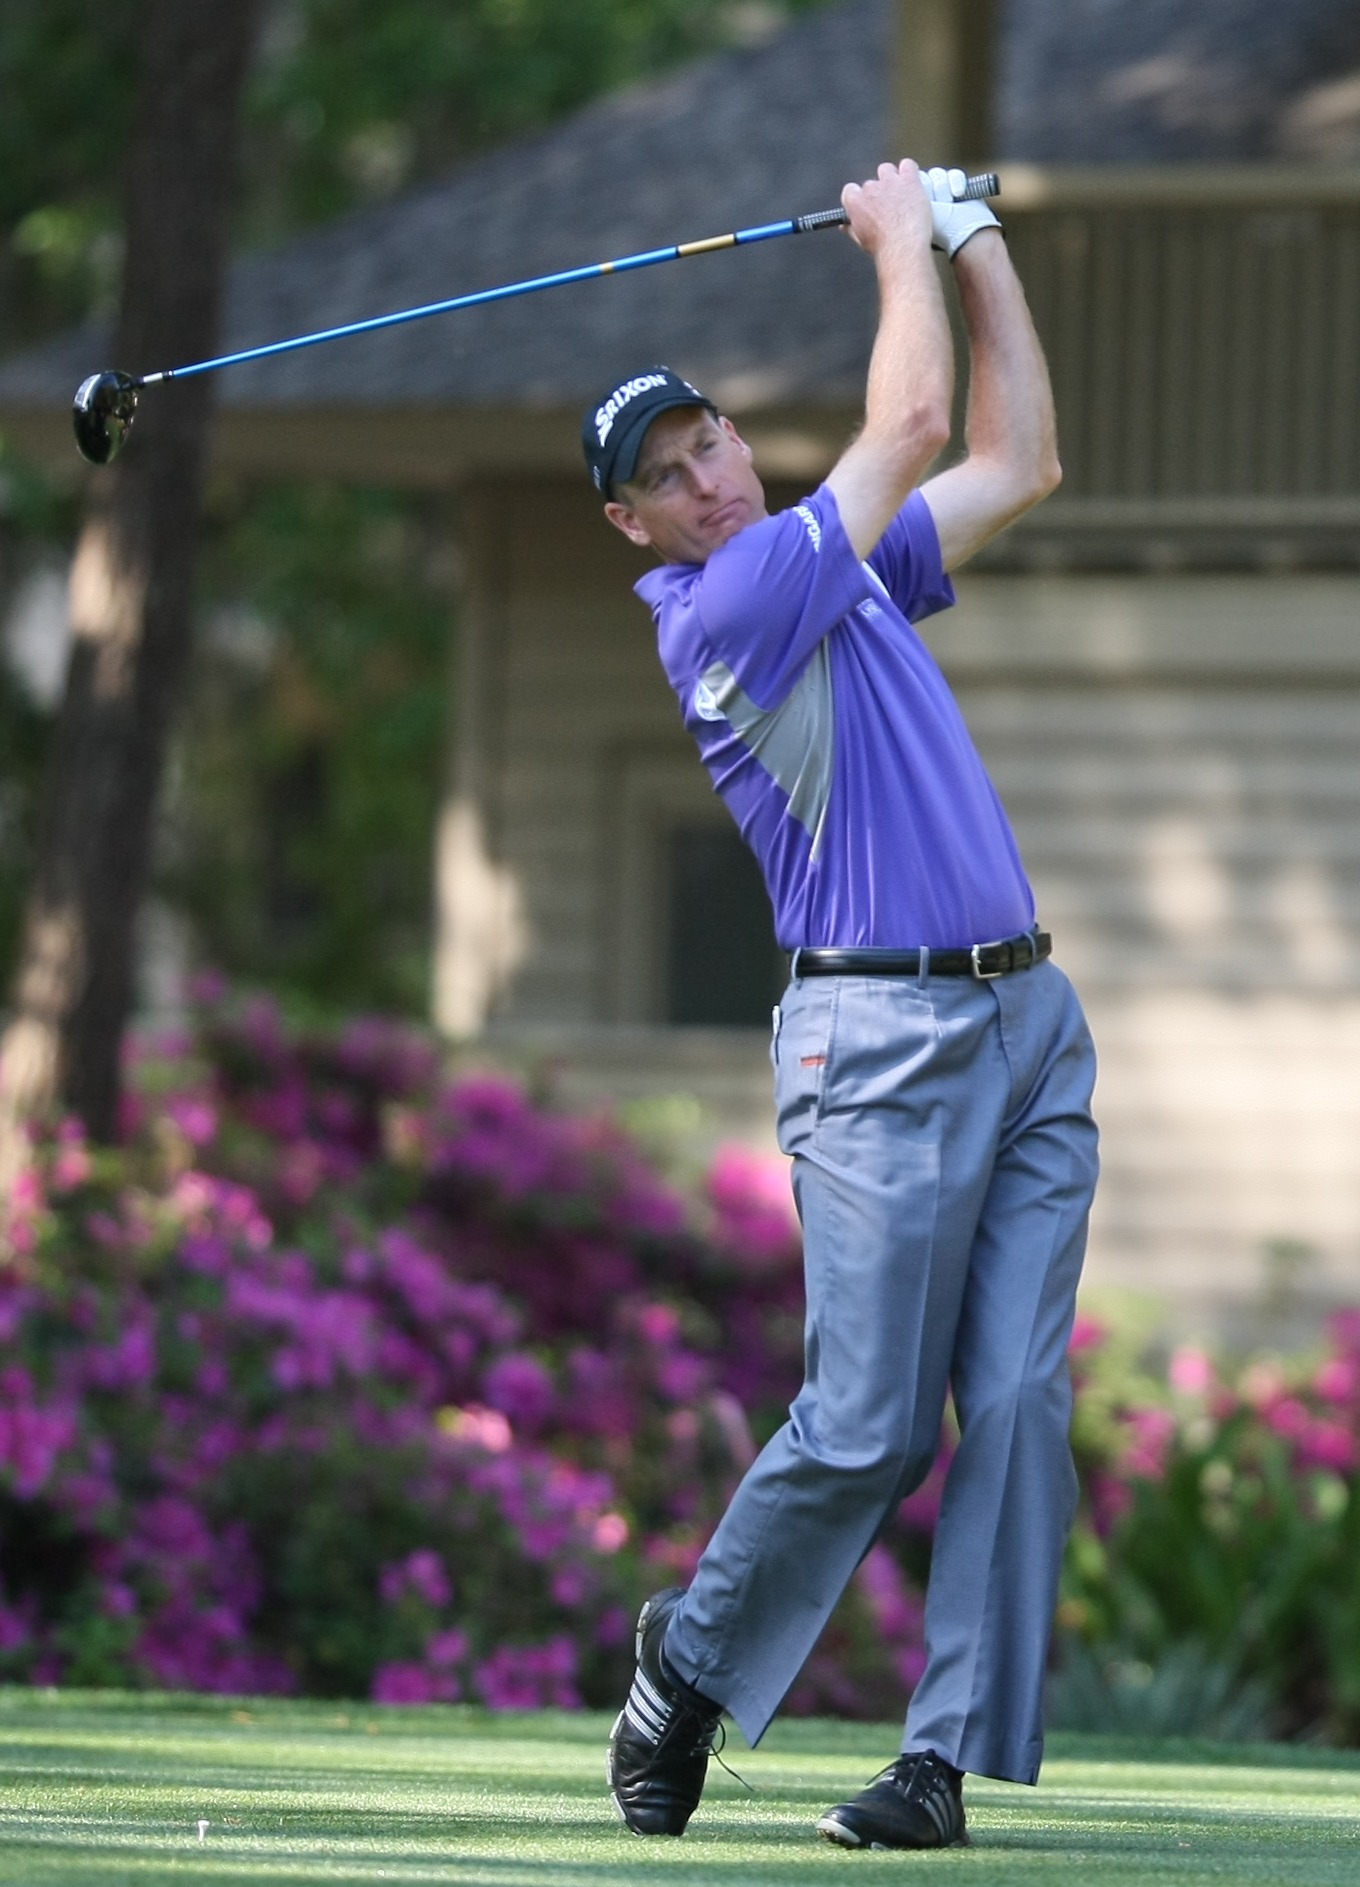 Jim Furyk swinging a golf club